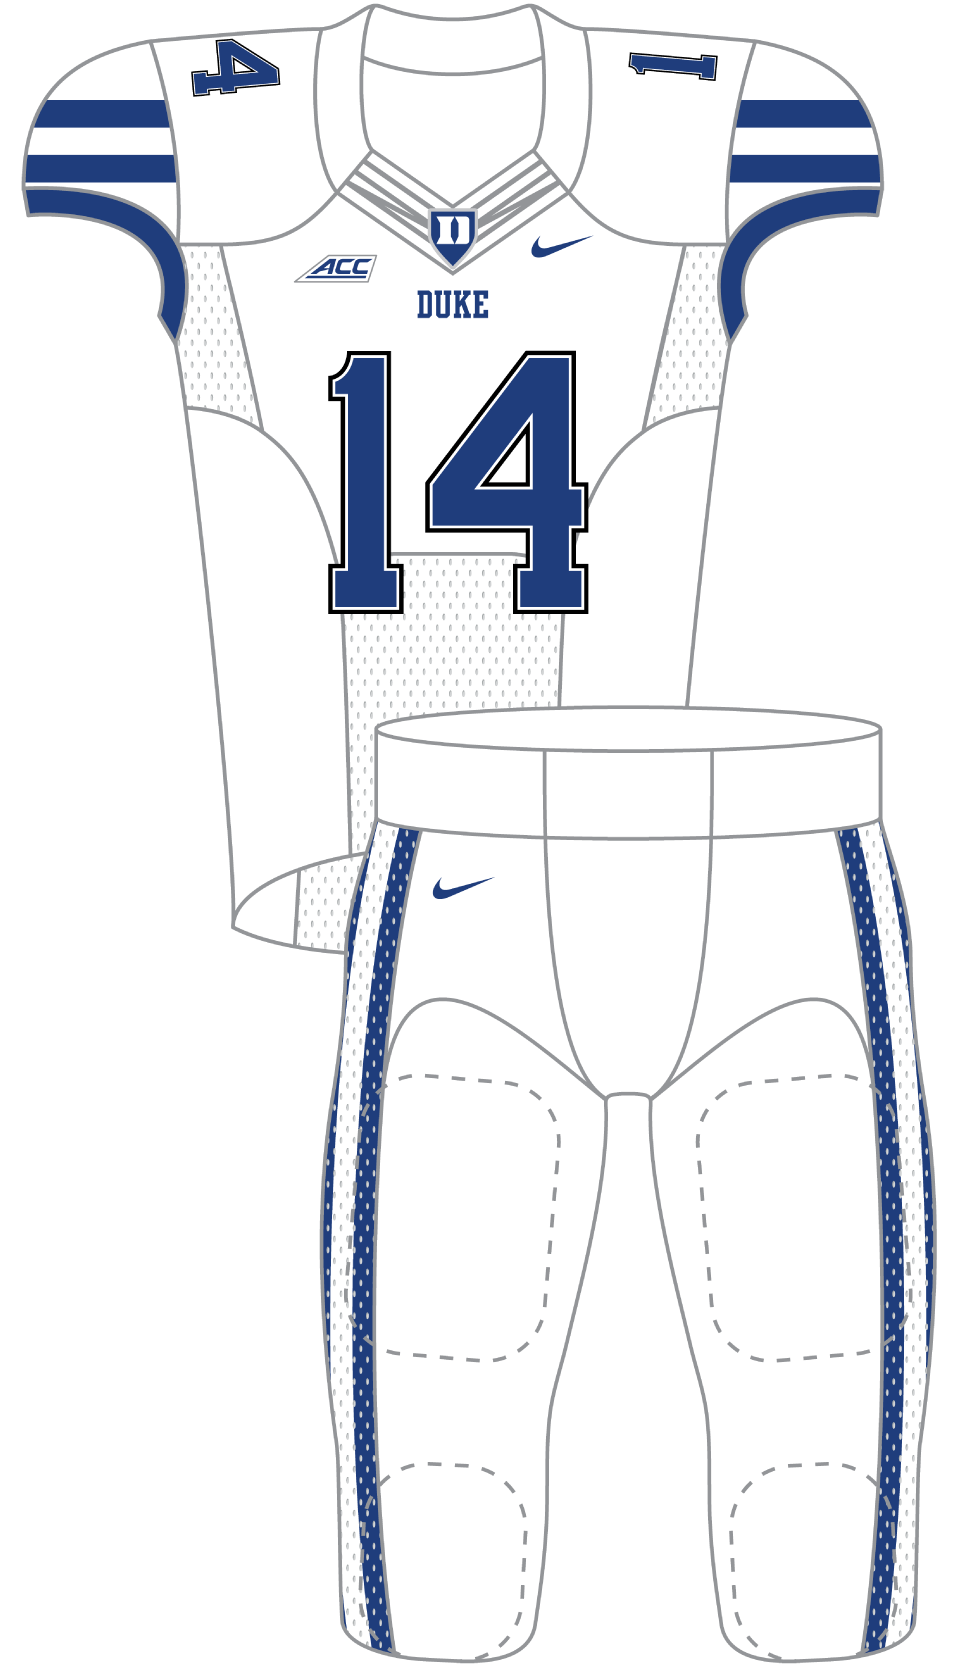 Duke 2014 White Uniform